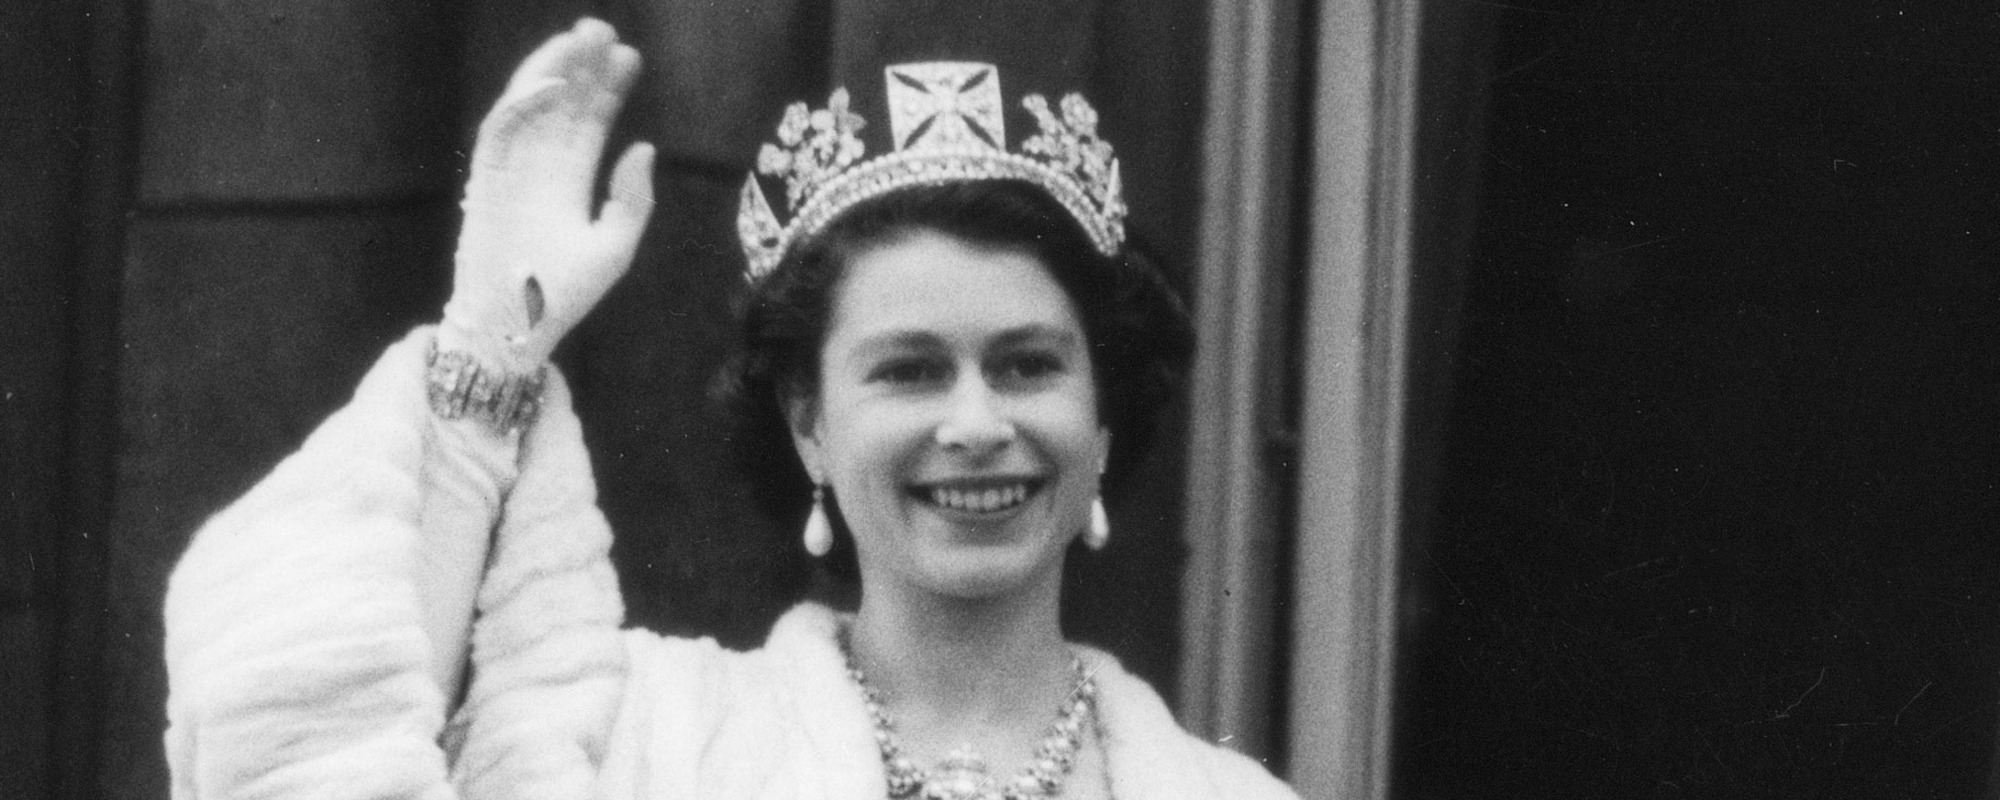 7 of Queen Elizabeth II’s Favorite Songs